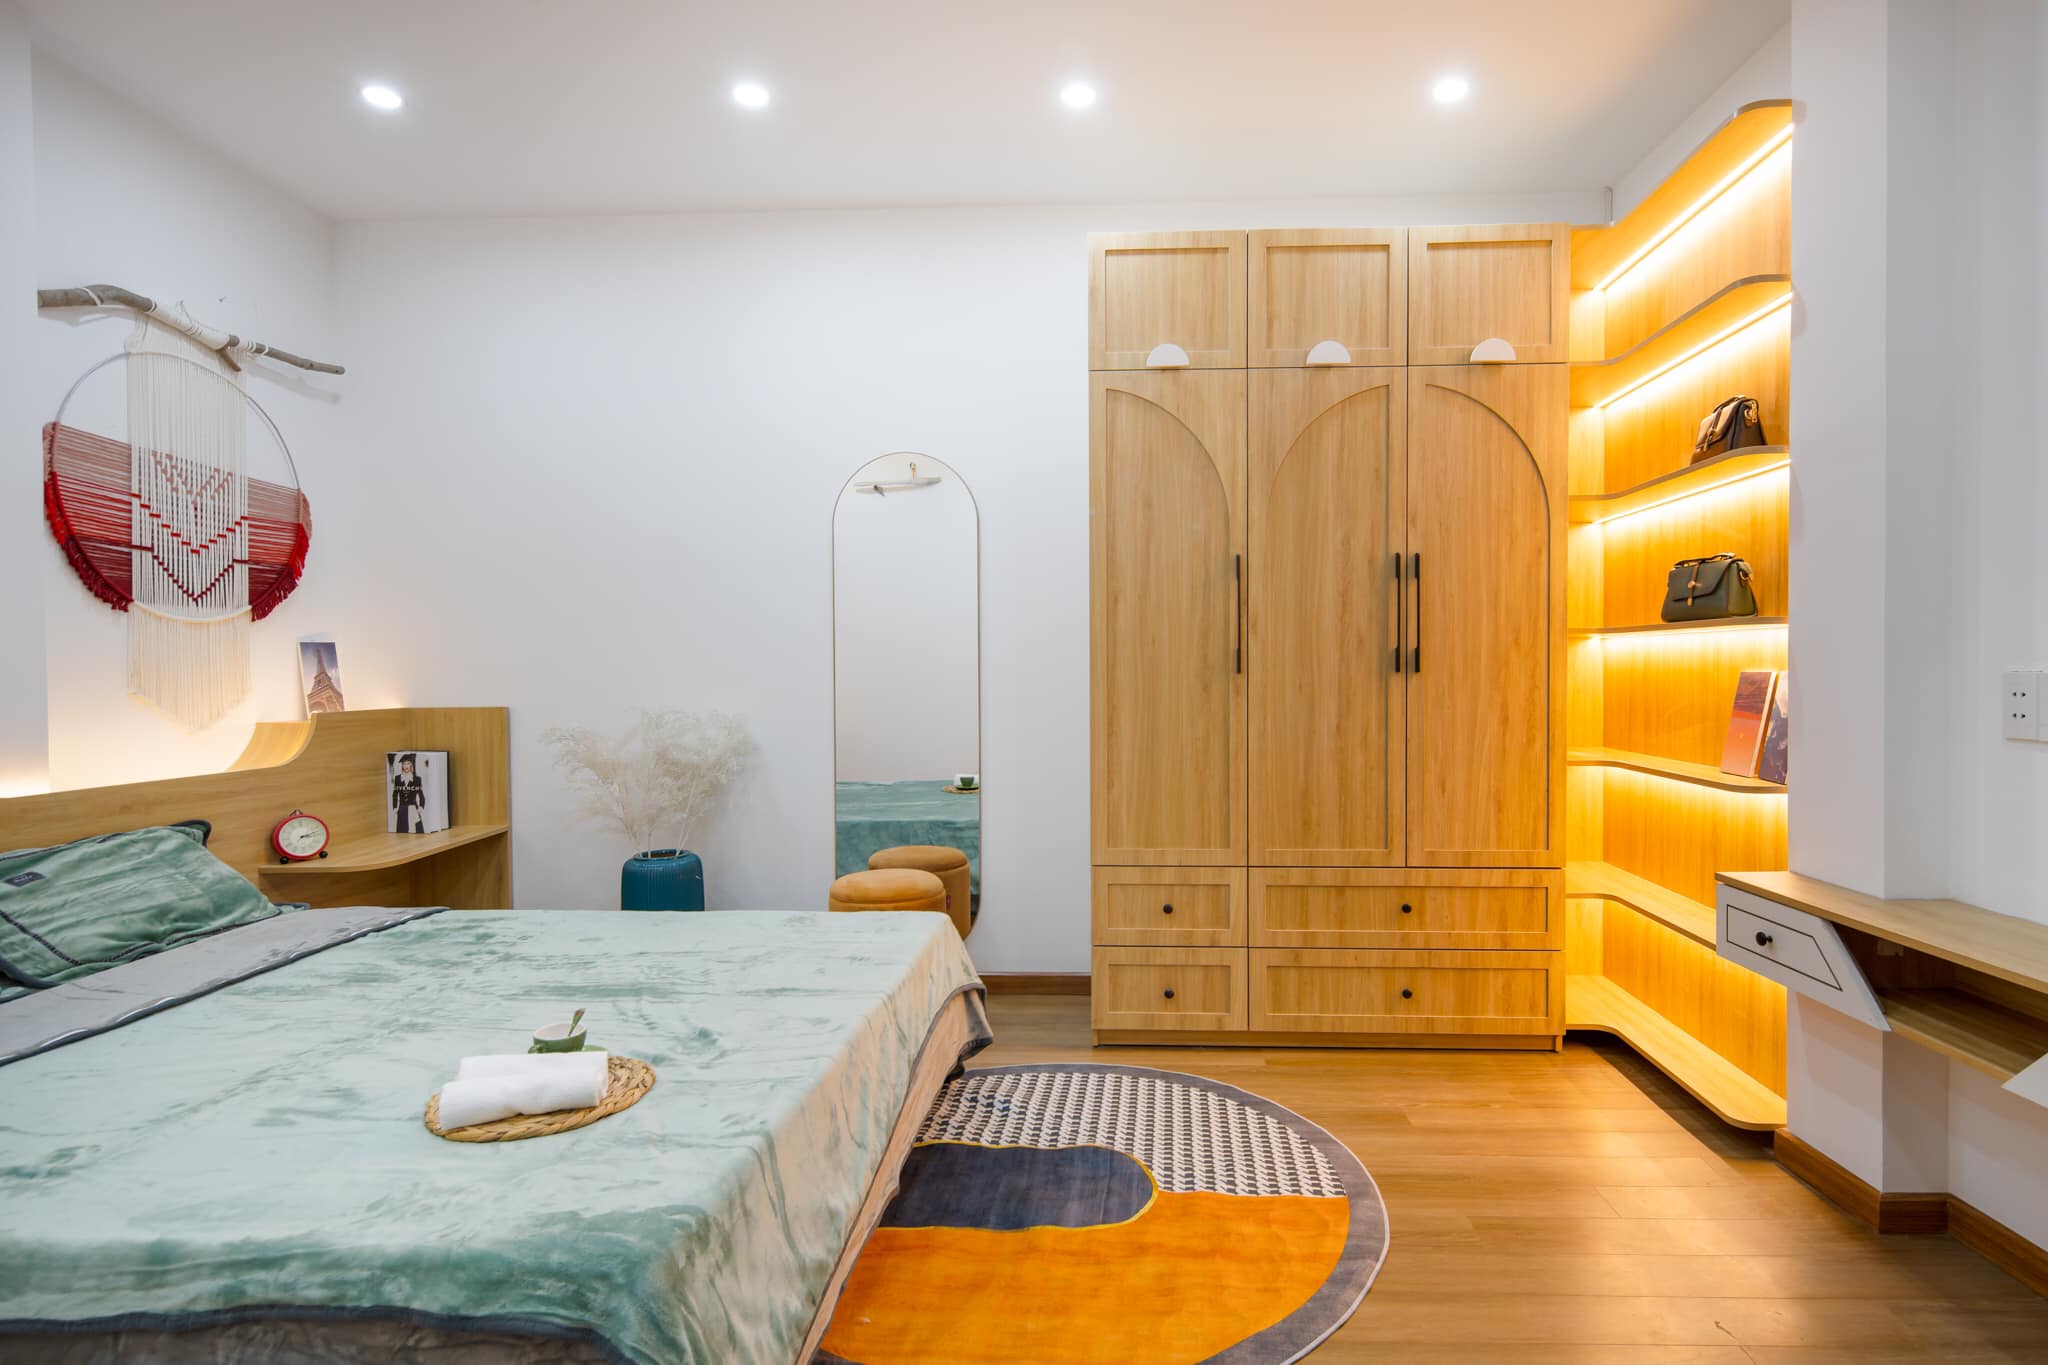 Hệ tủ quần áo, tủ trang trí với đường vòm tinh tế sử dụng chất liệu gỗ tự nhiên kết hợp đèn led